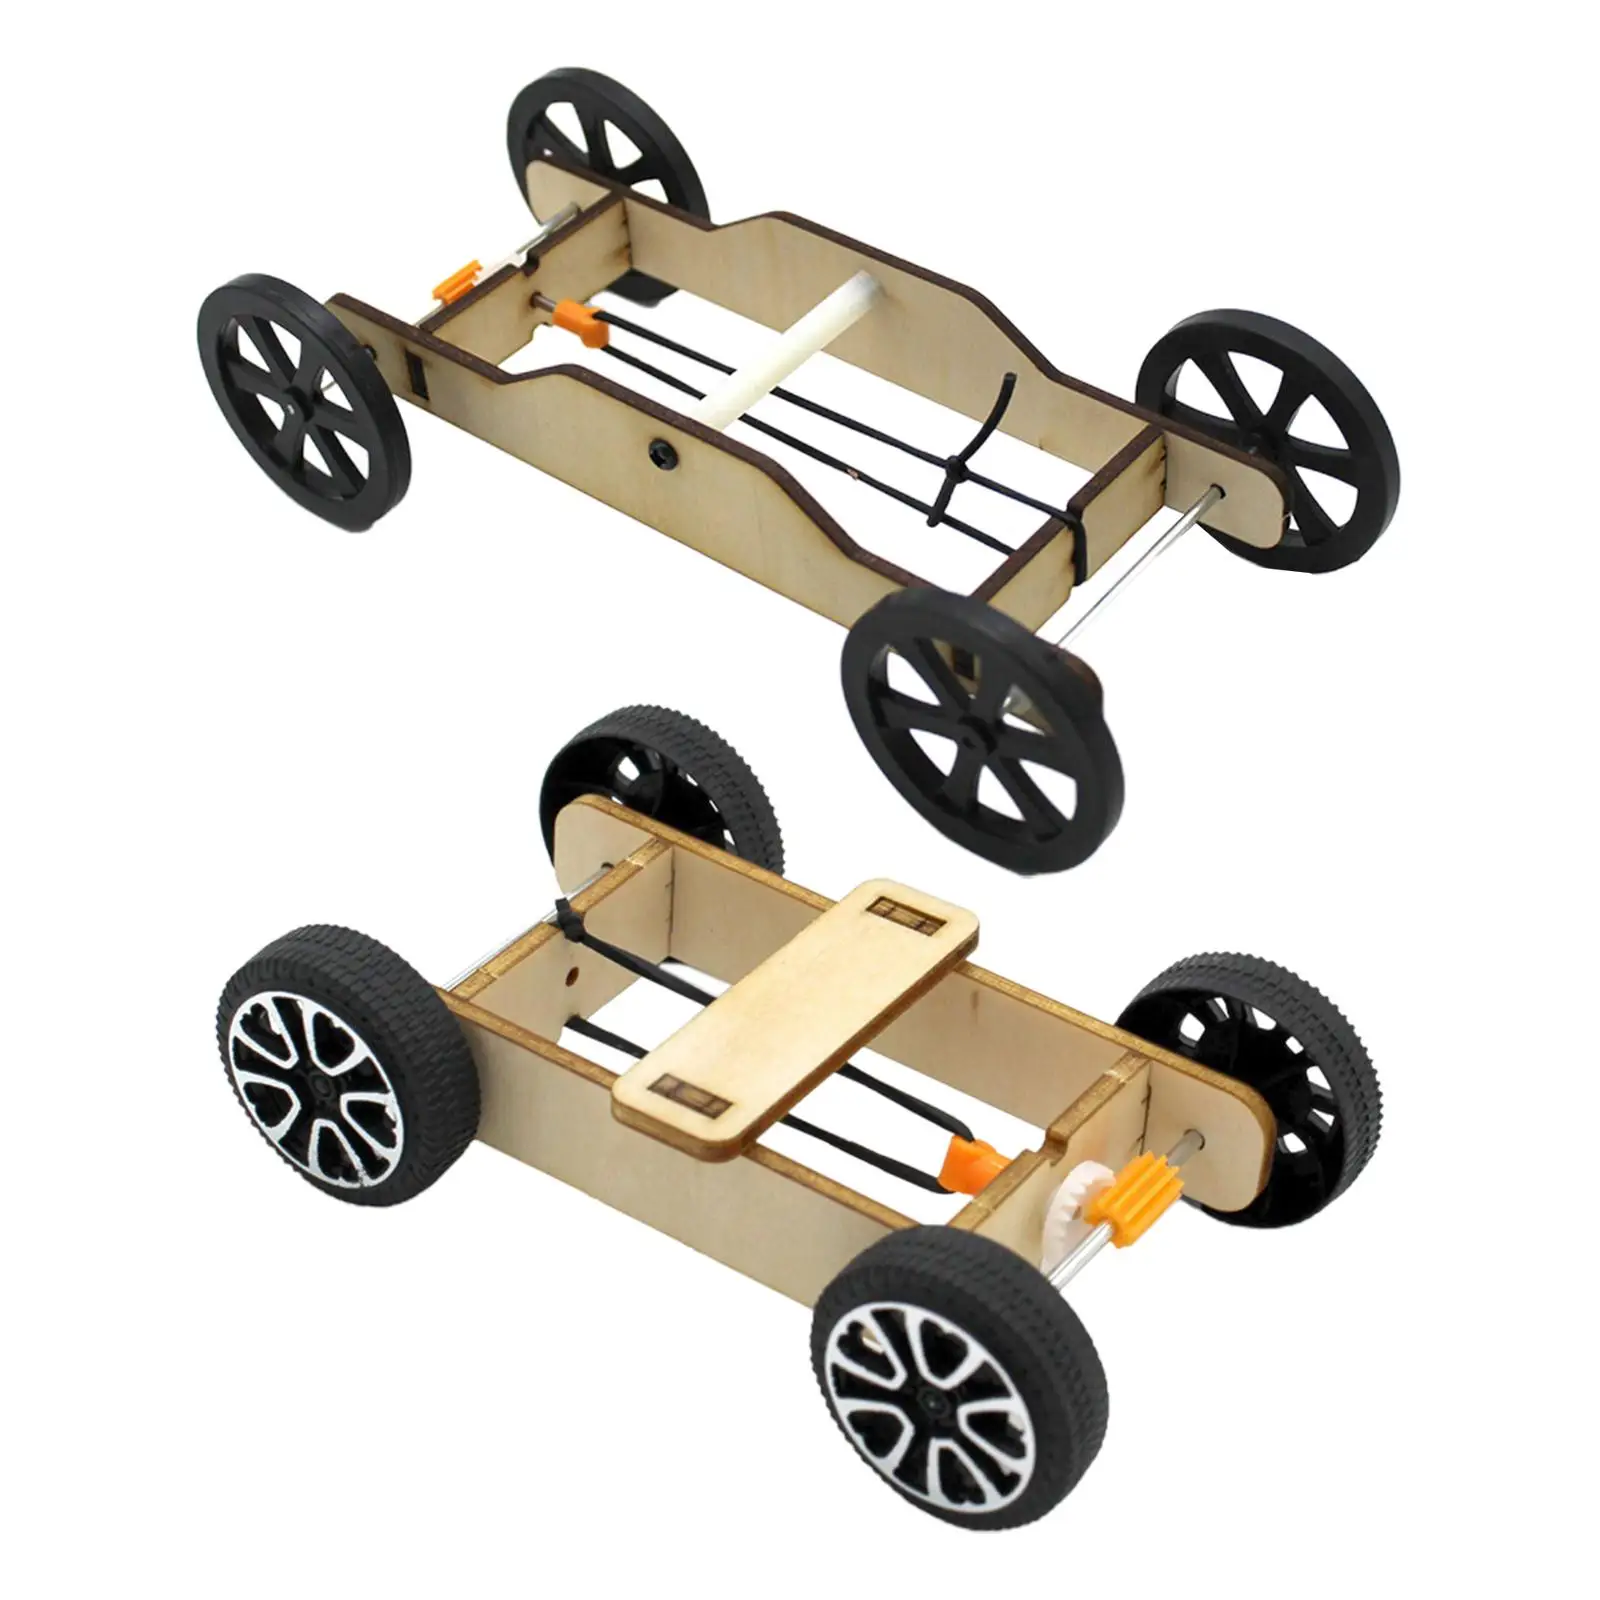 

DIY наборы моделей автомобилей, научная физика, Резиновая лента для сборки автомобиля, модель автомобиля